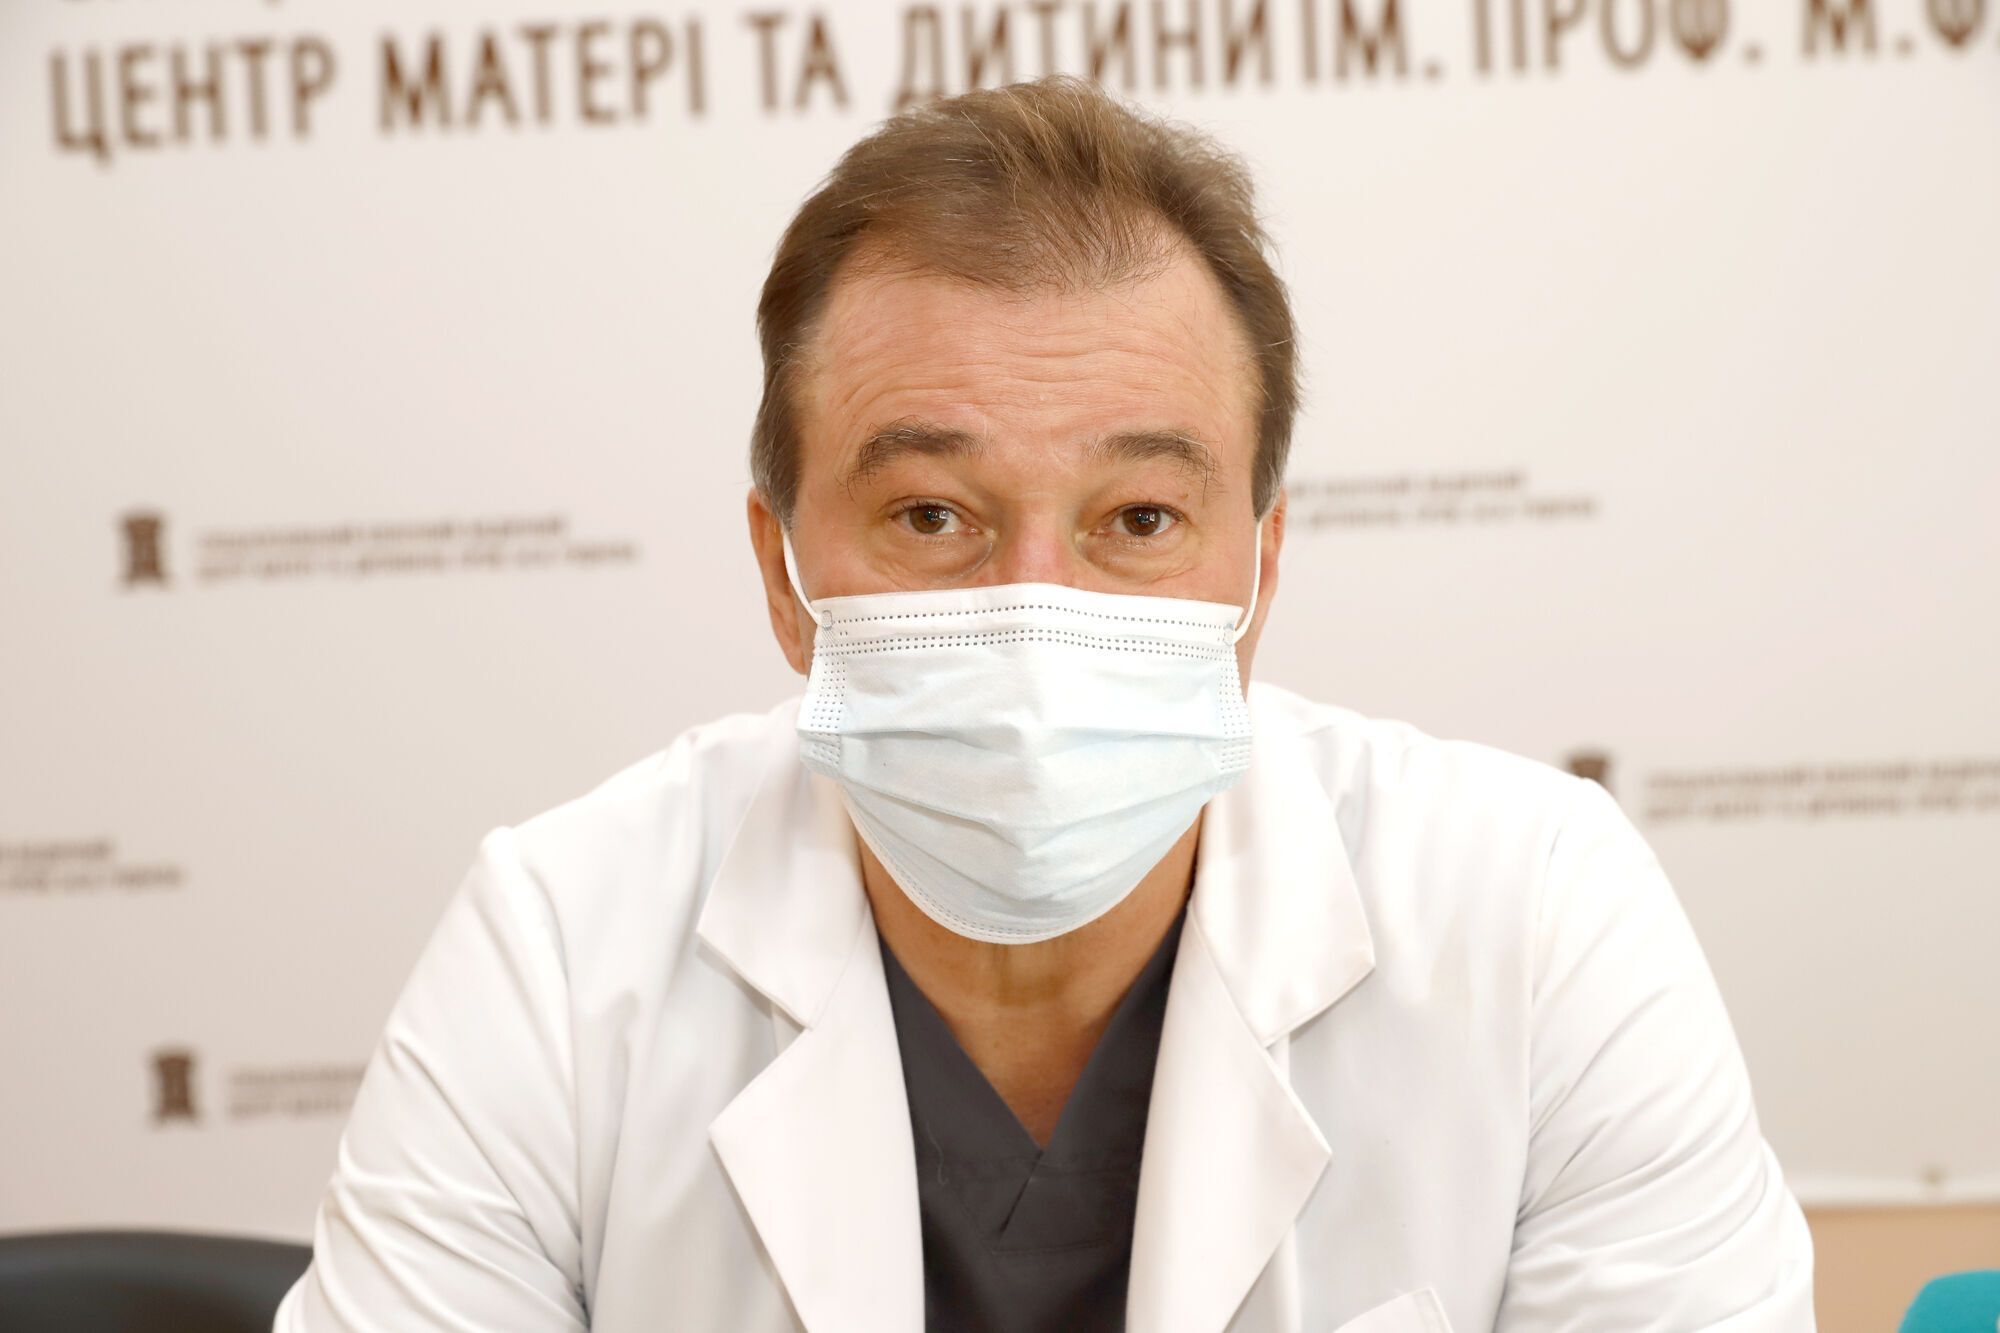 Завідувач кардіохірургічного відділення лікарні Павло Павлов